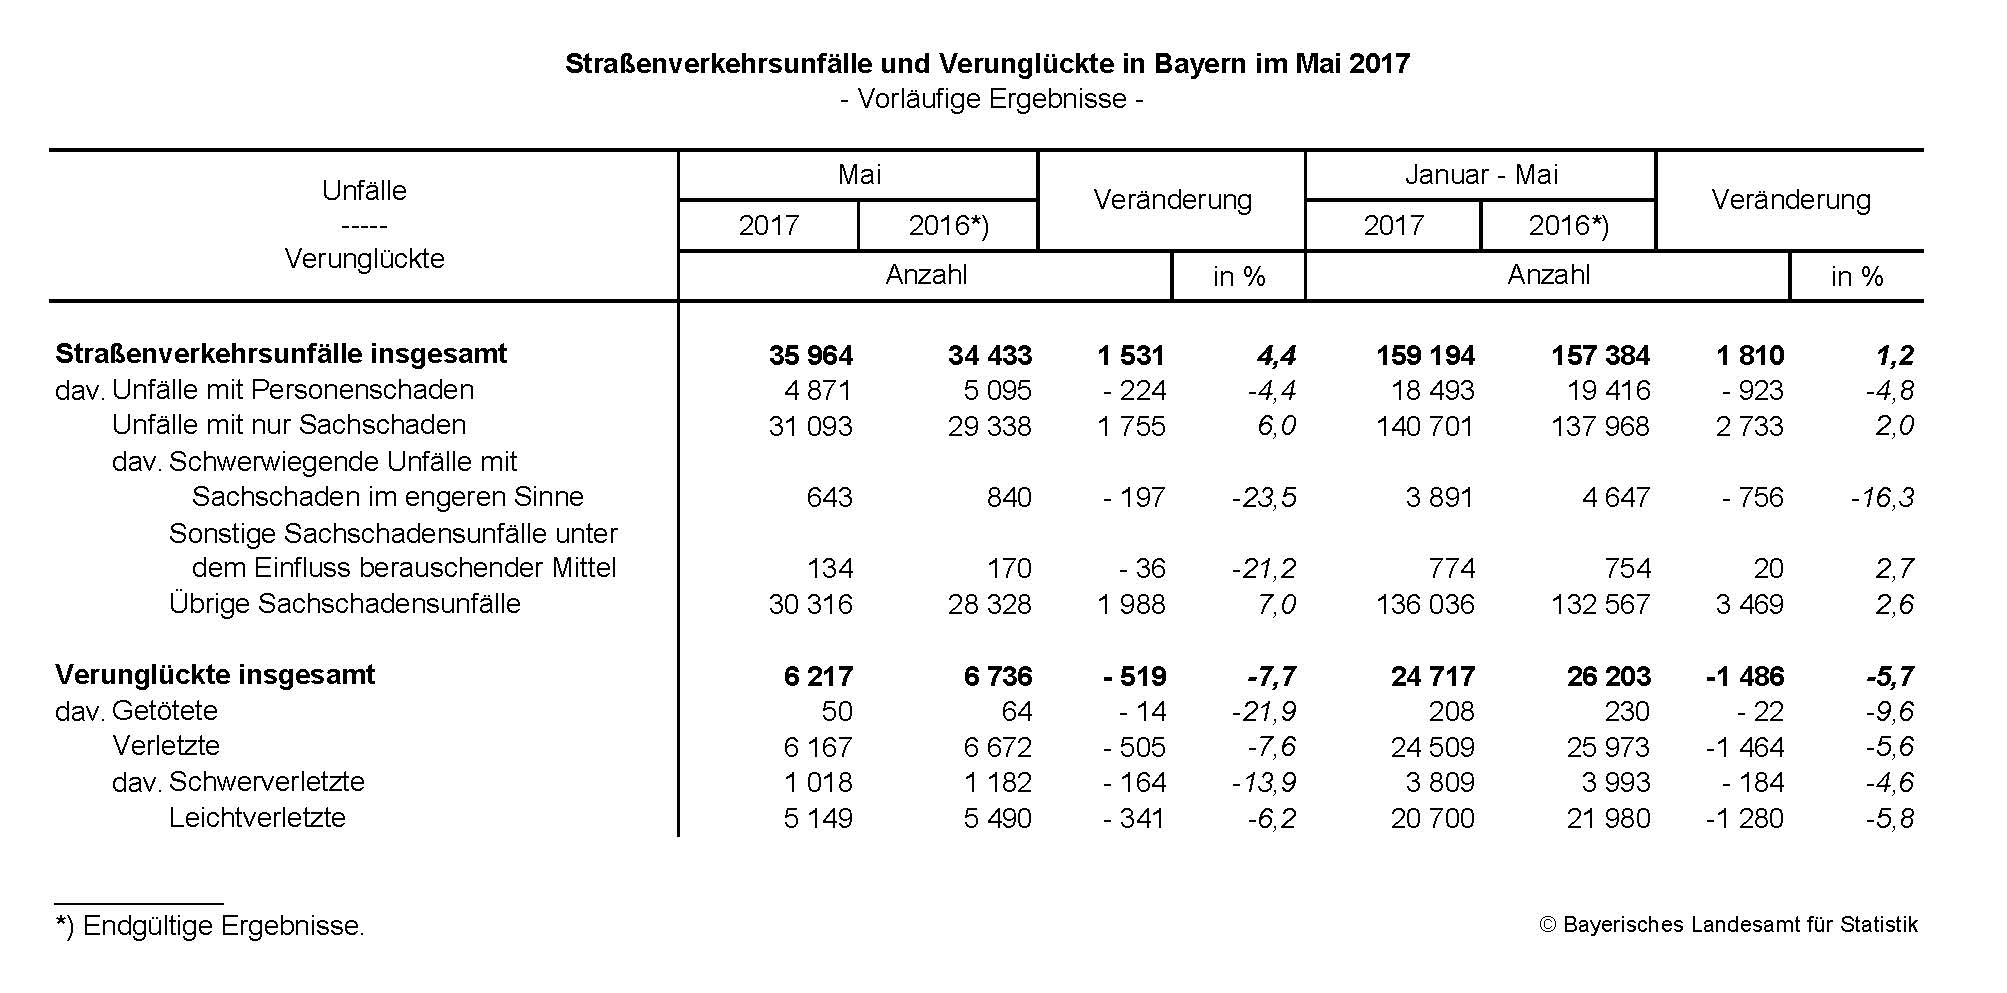 Straßenverkehrsunfälle und Verunglückte in Bayern im Mai 2017